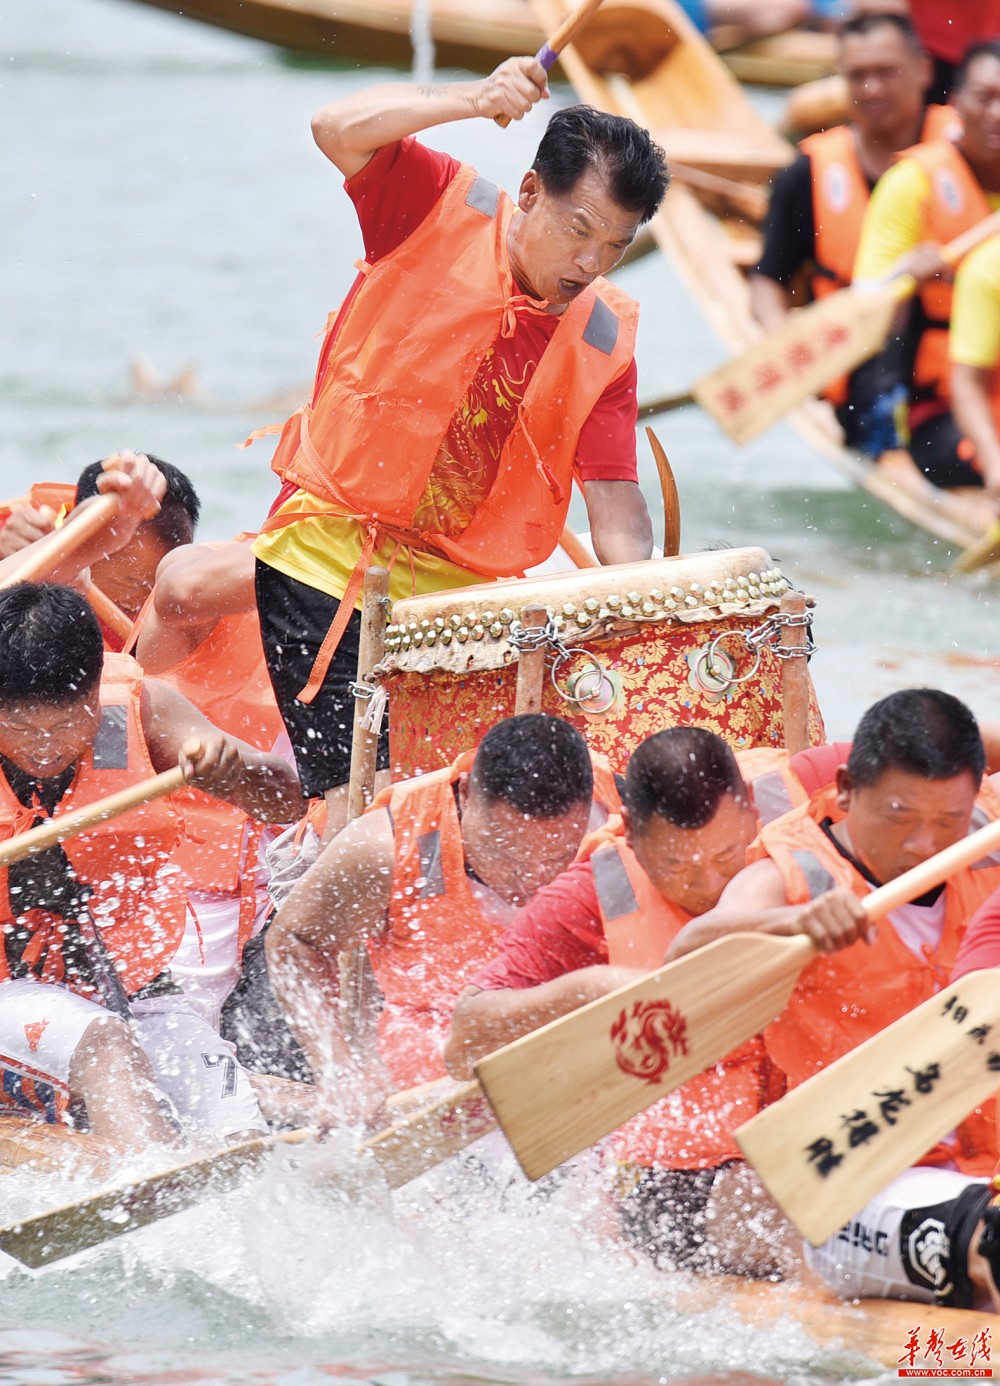 6月22日,株洲市渌口区南洲镇在昭陵古镇举办龙舟赛,6支龙舟代表队在